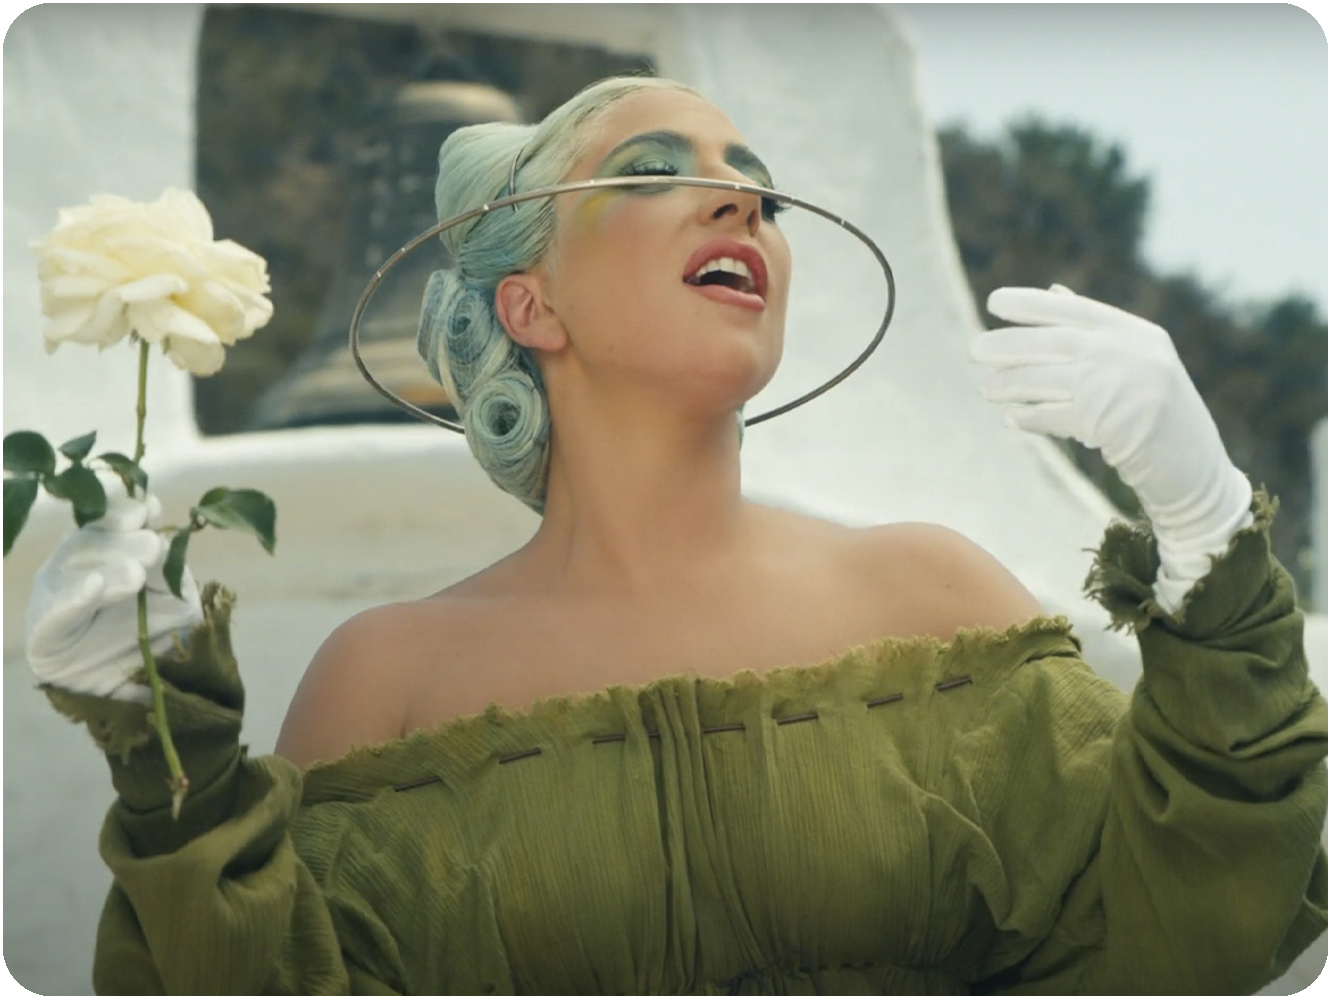  Lady Gaga quedó absolutamente satisfecha con el final de ‘Los Serrano’, según aclara ‘911’